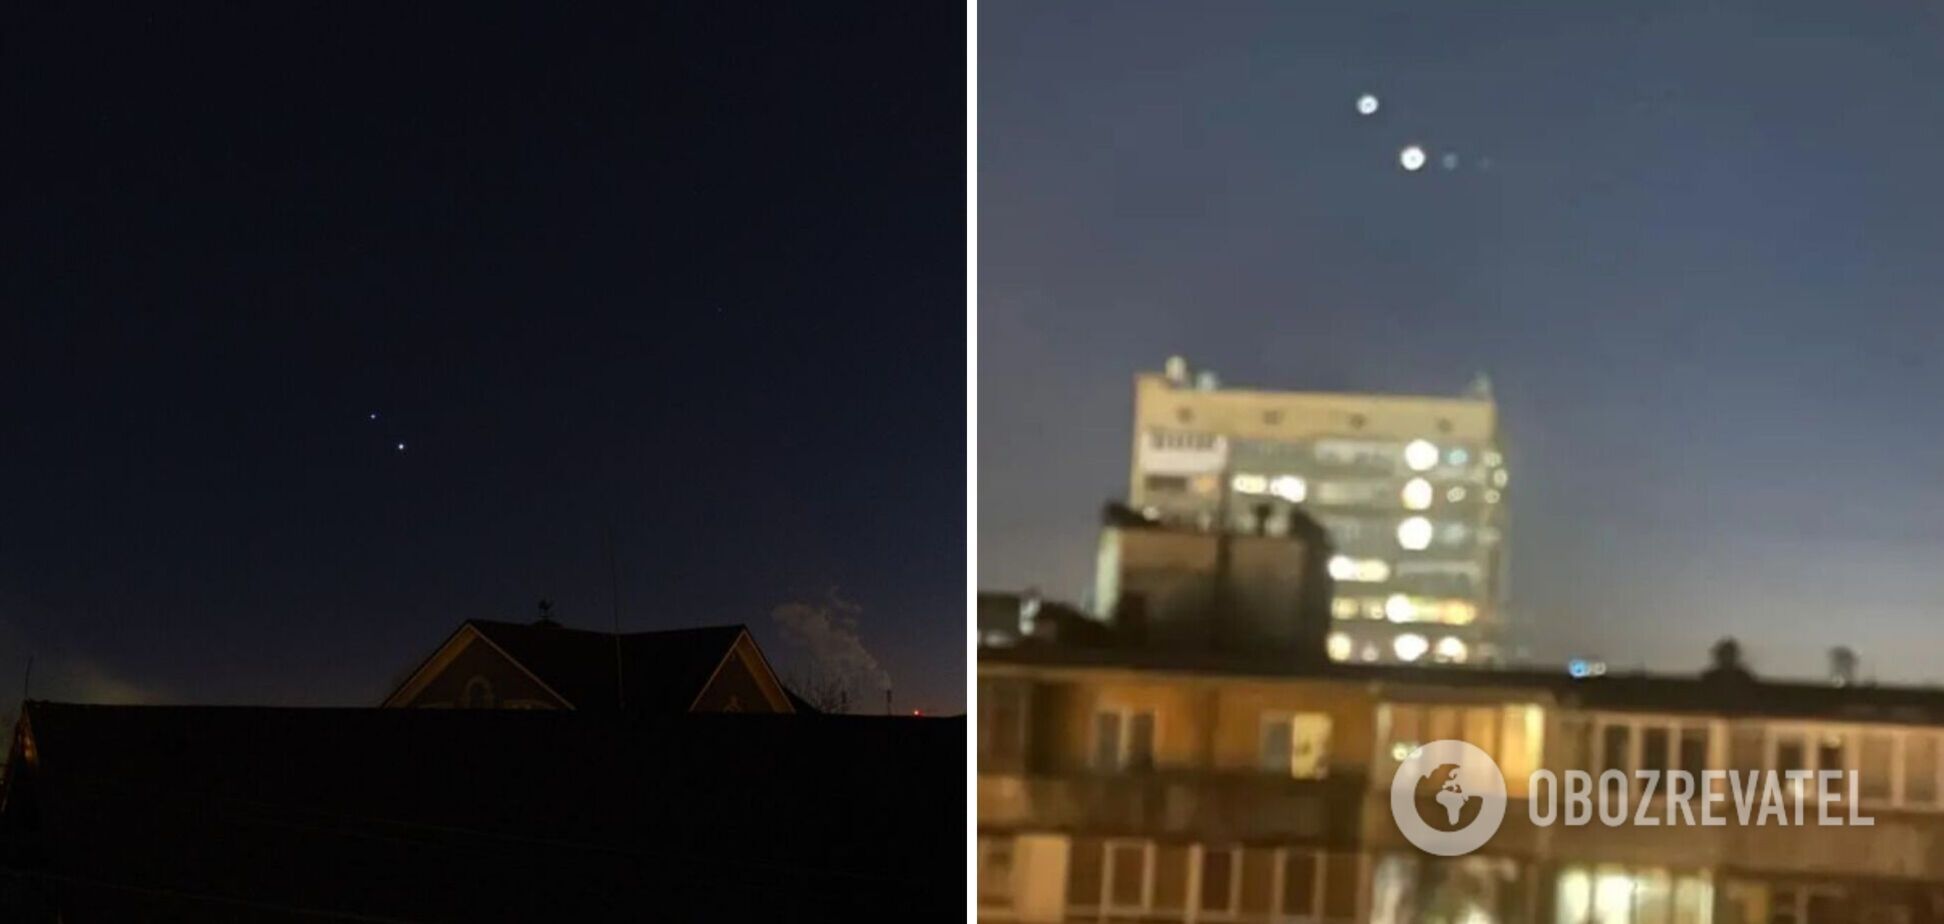 Погода позволила увидеть редкое космическое явление: астролог рассказал, что это значит для Украины